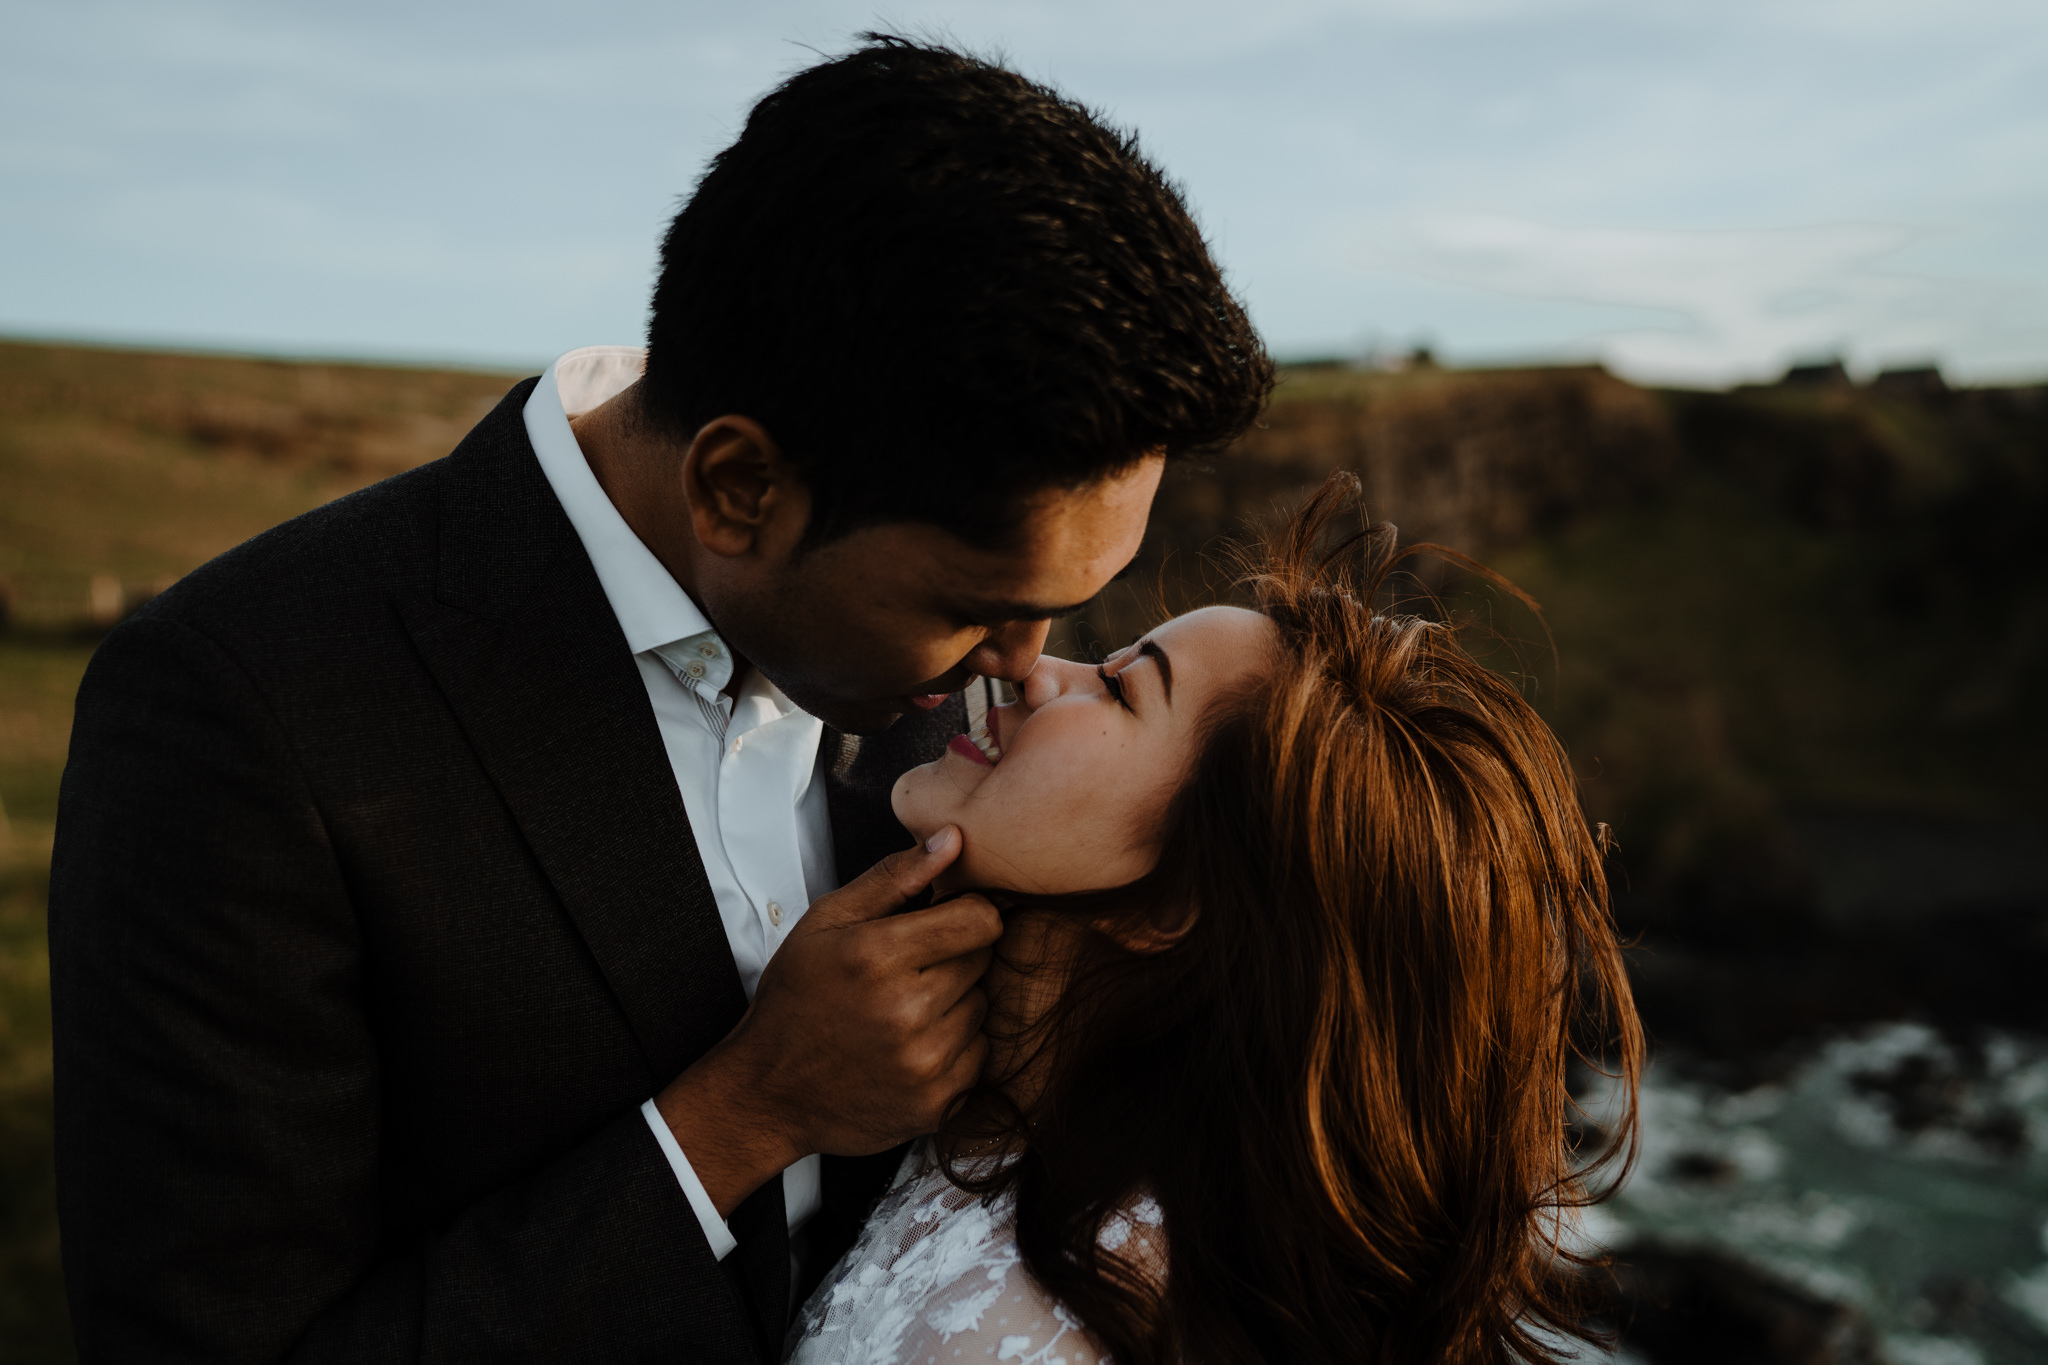 Northern-Ireland-elopement-photographer-Irish-elopements-dunluce-castle-kiss-asian-couple